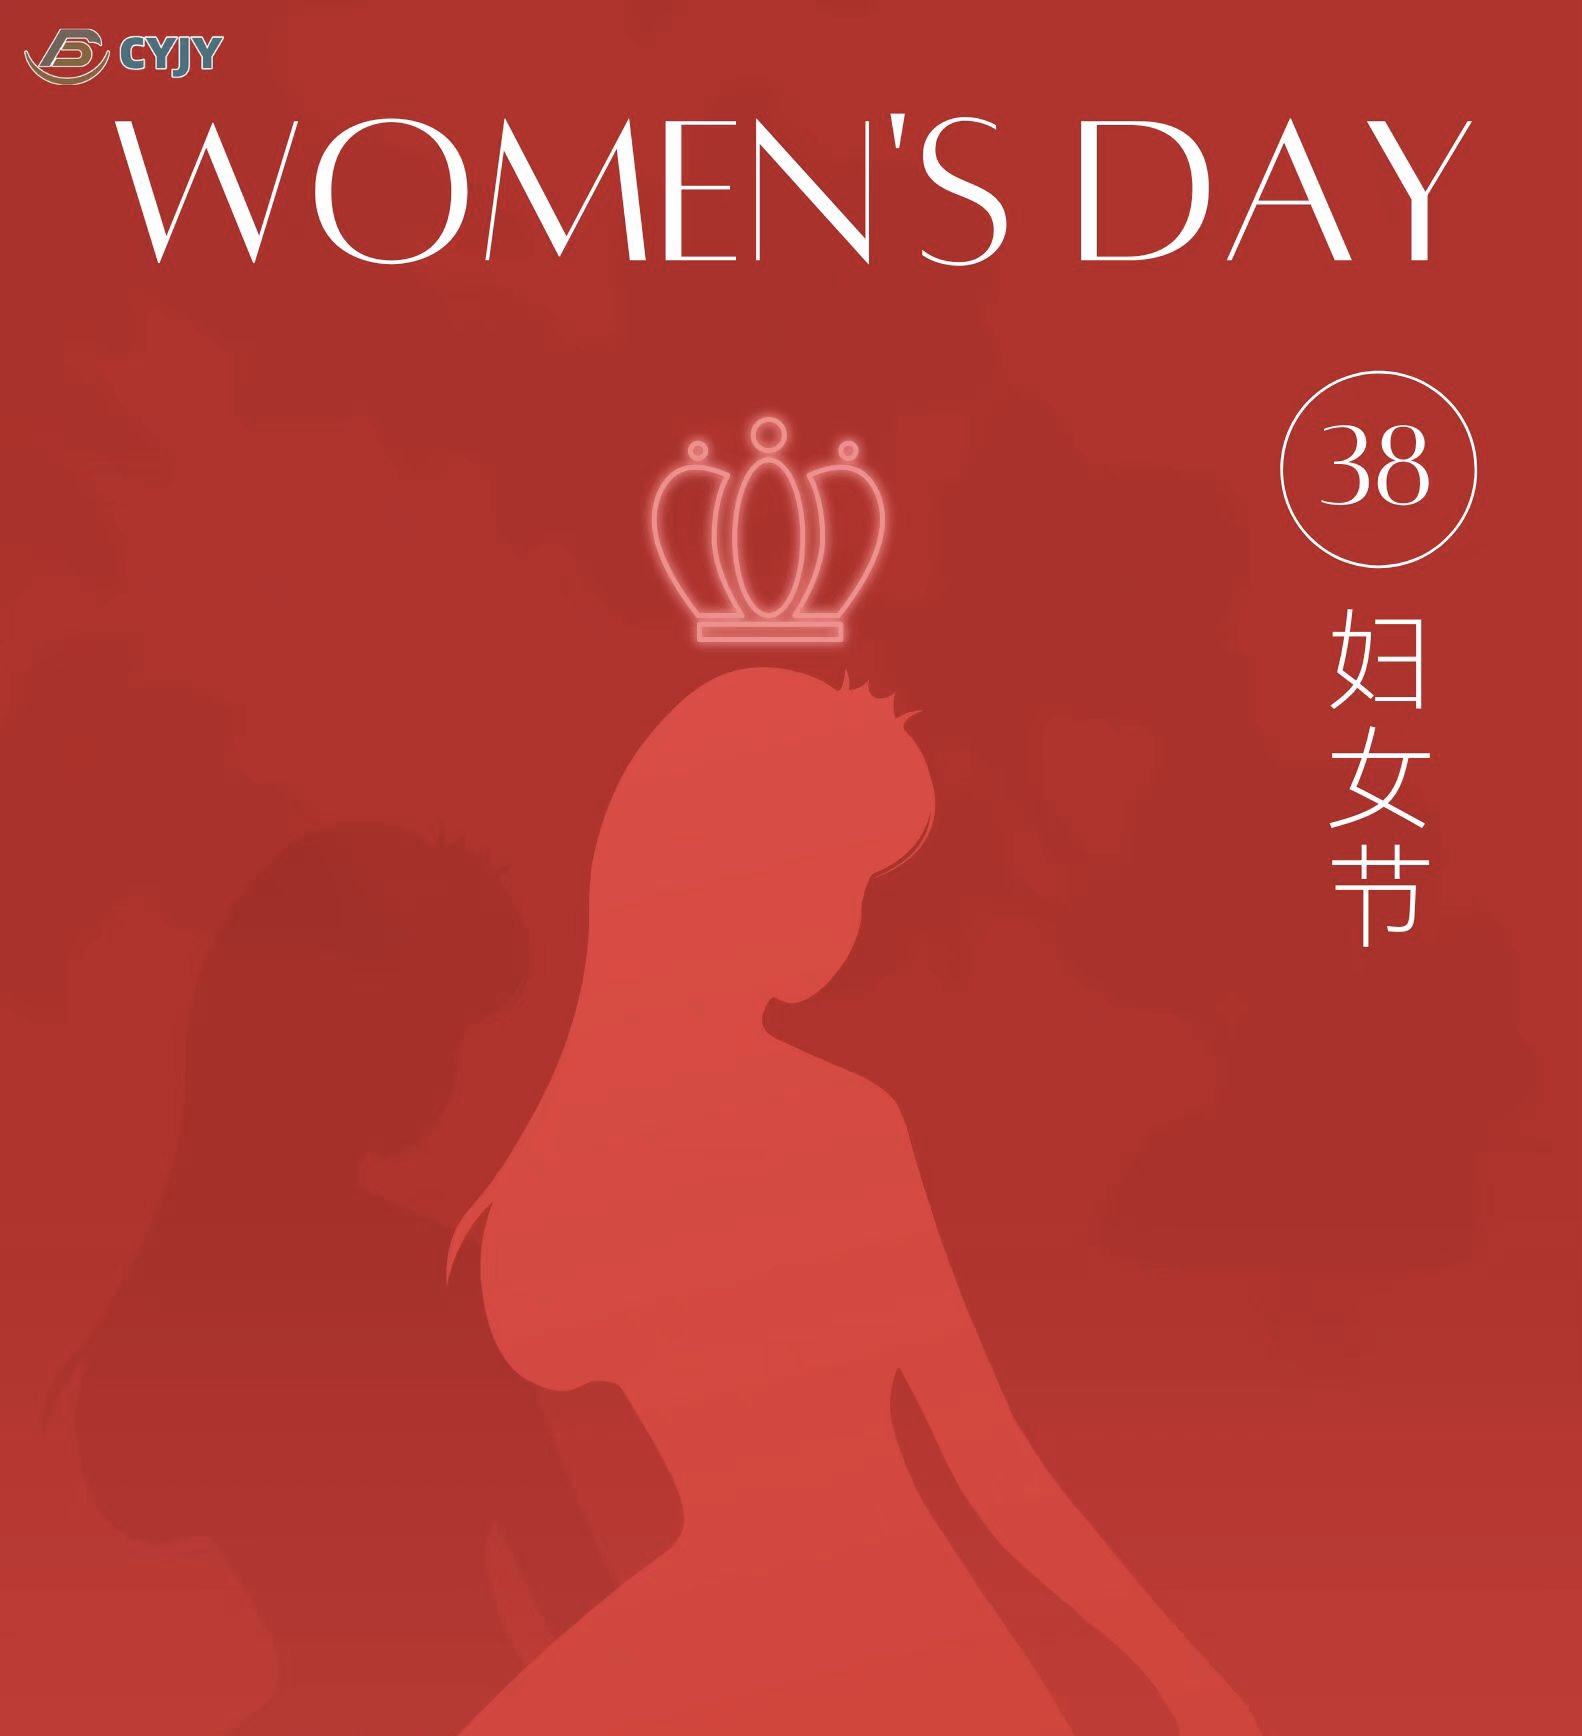 Šťastný Medzinárodný deň pracujúcich žien